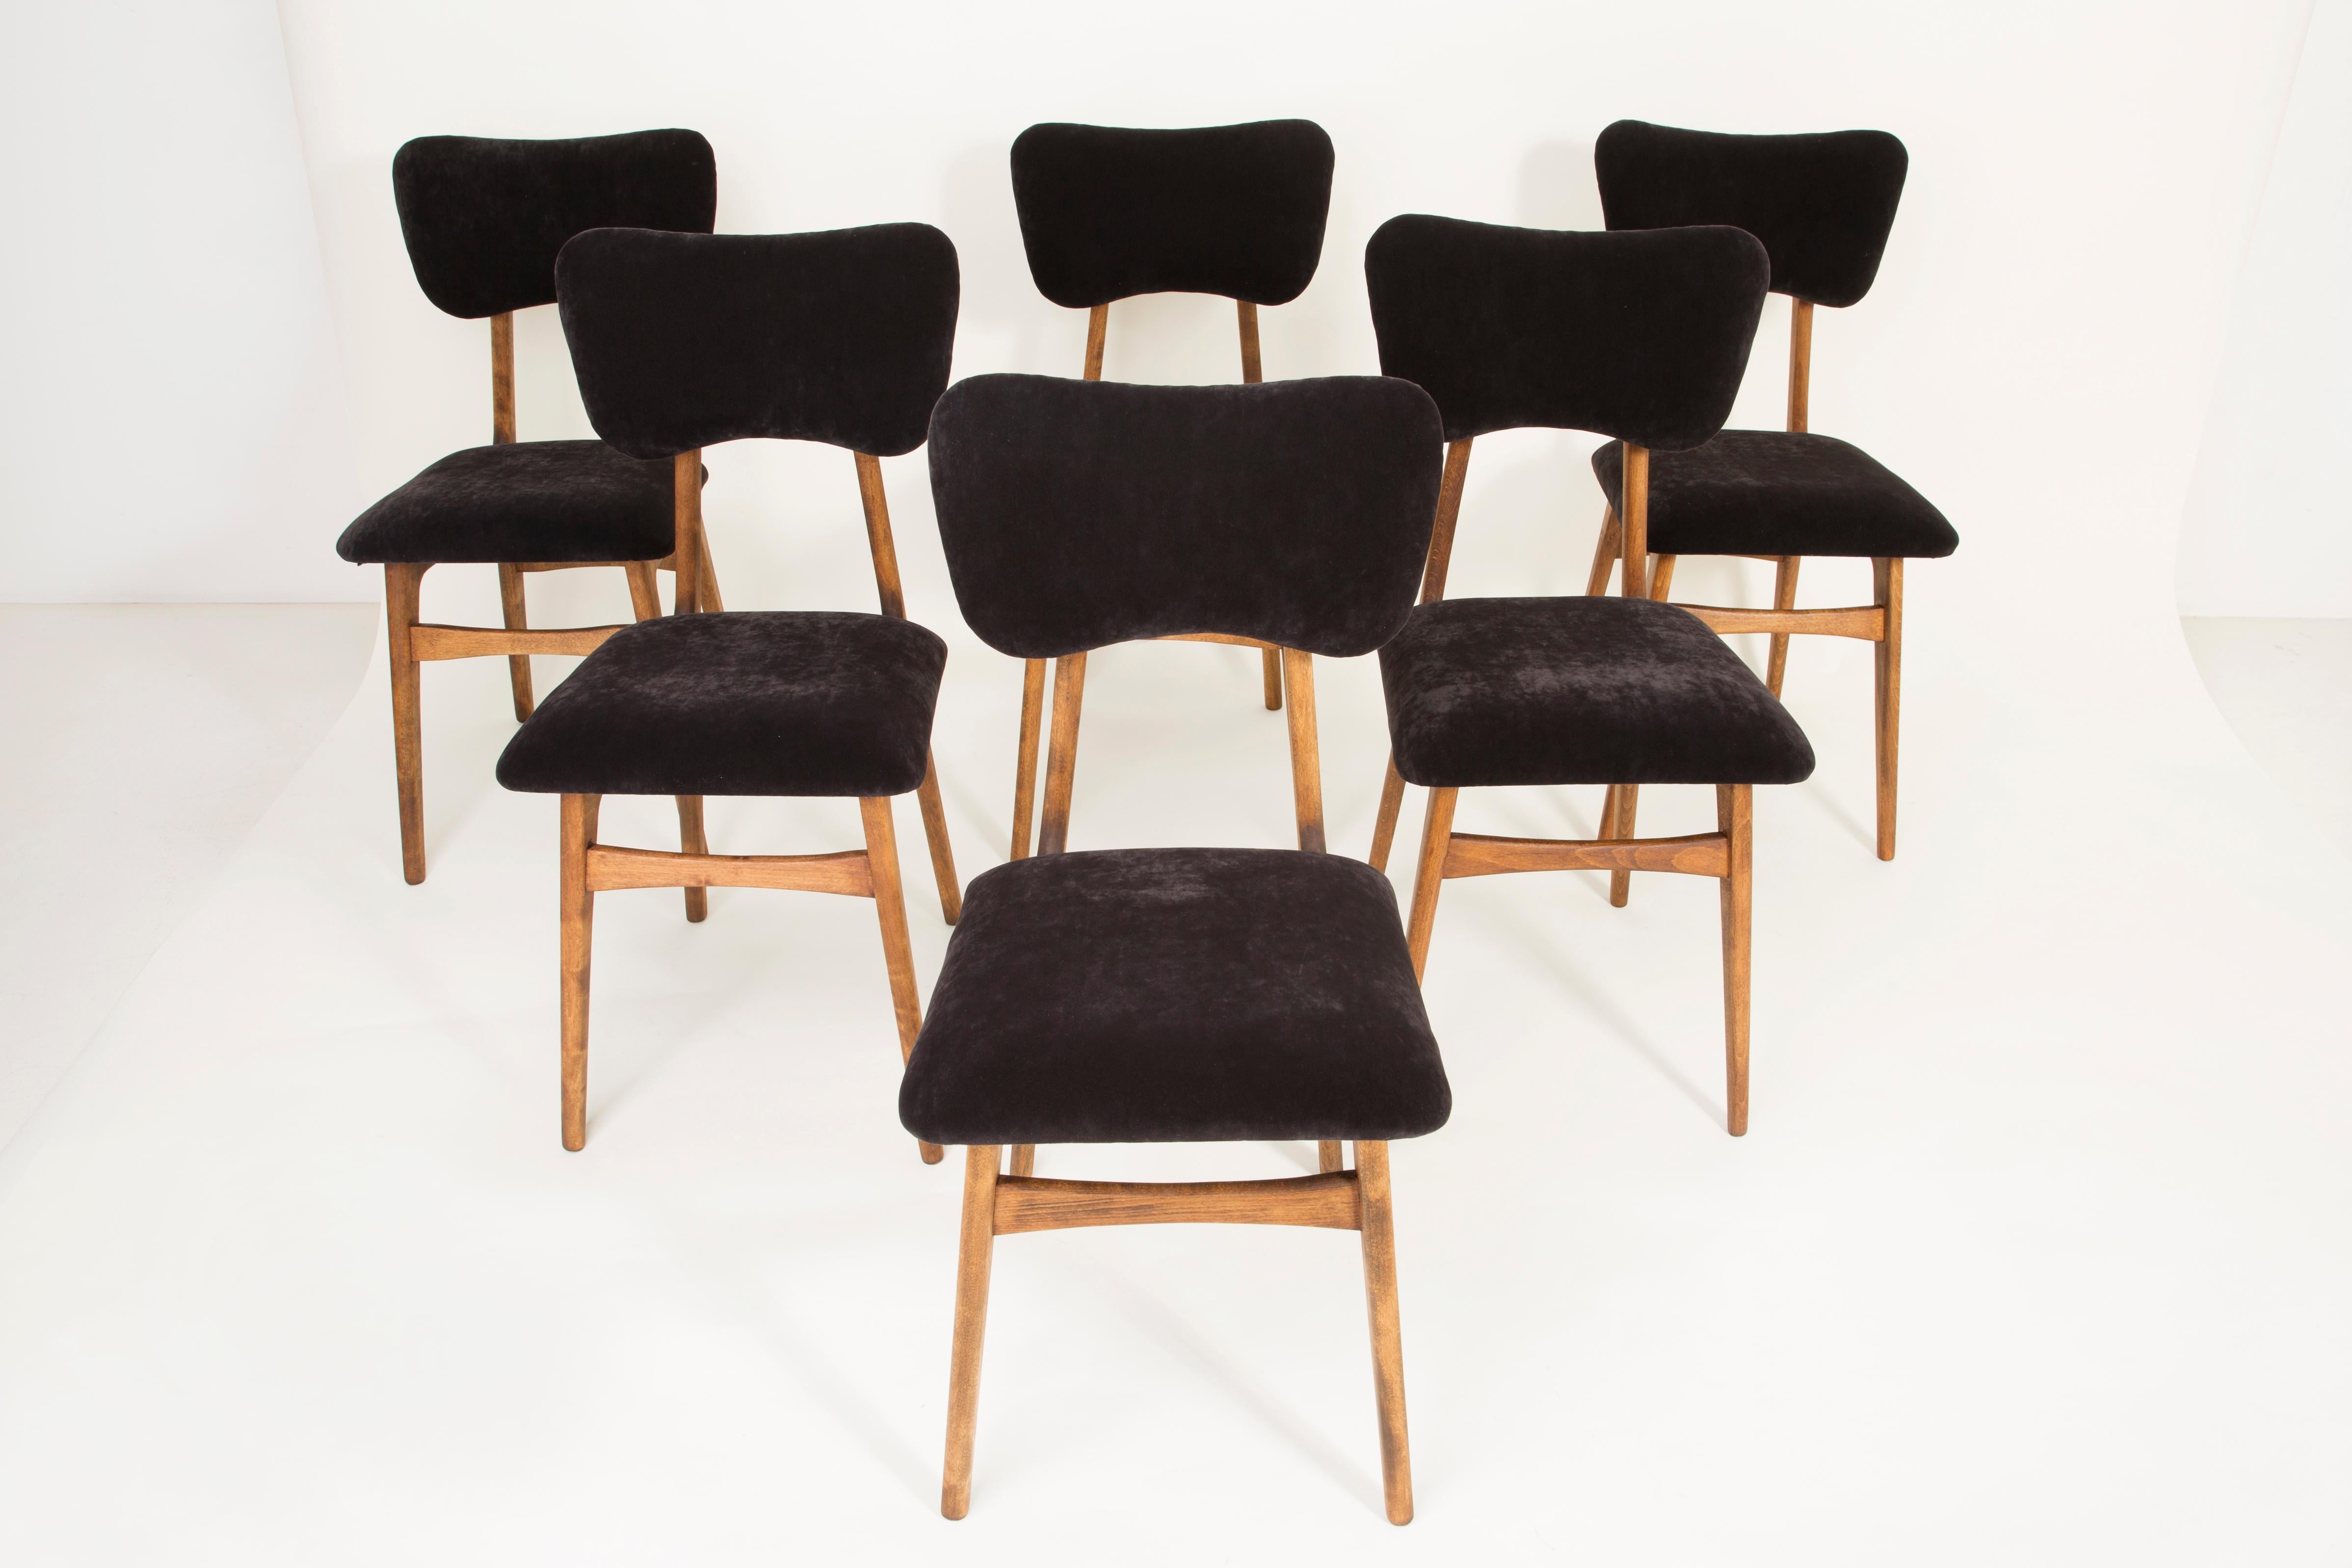 Stühle entworfen von prof. Rajmund Halas. Hergestellt aus Buchenholz. Der Stuhl wurde komplett neu gepolstert, die Holzarbeiten wurden aufgefrischt. Sitz und Rückenlehne sind mit schwarzem, strapazierfähigem und angenehm zu berührendem Samtstoff